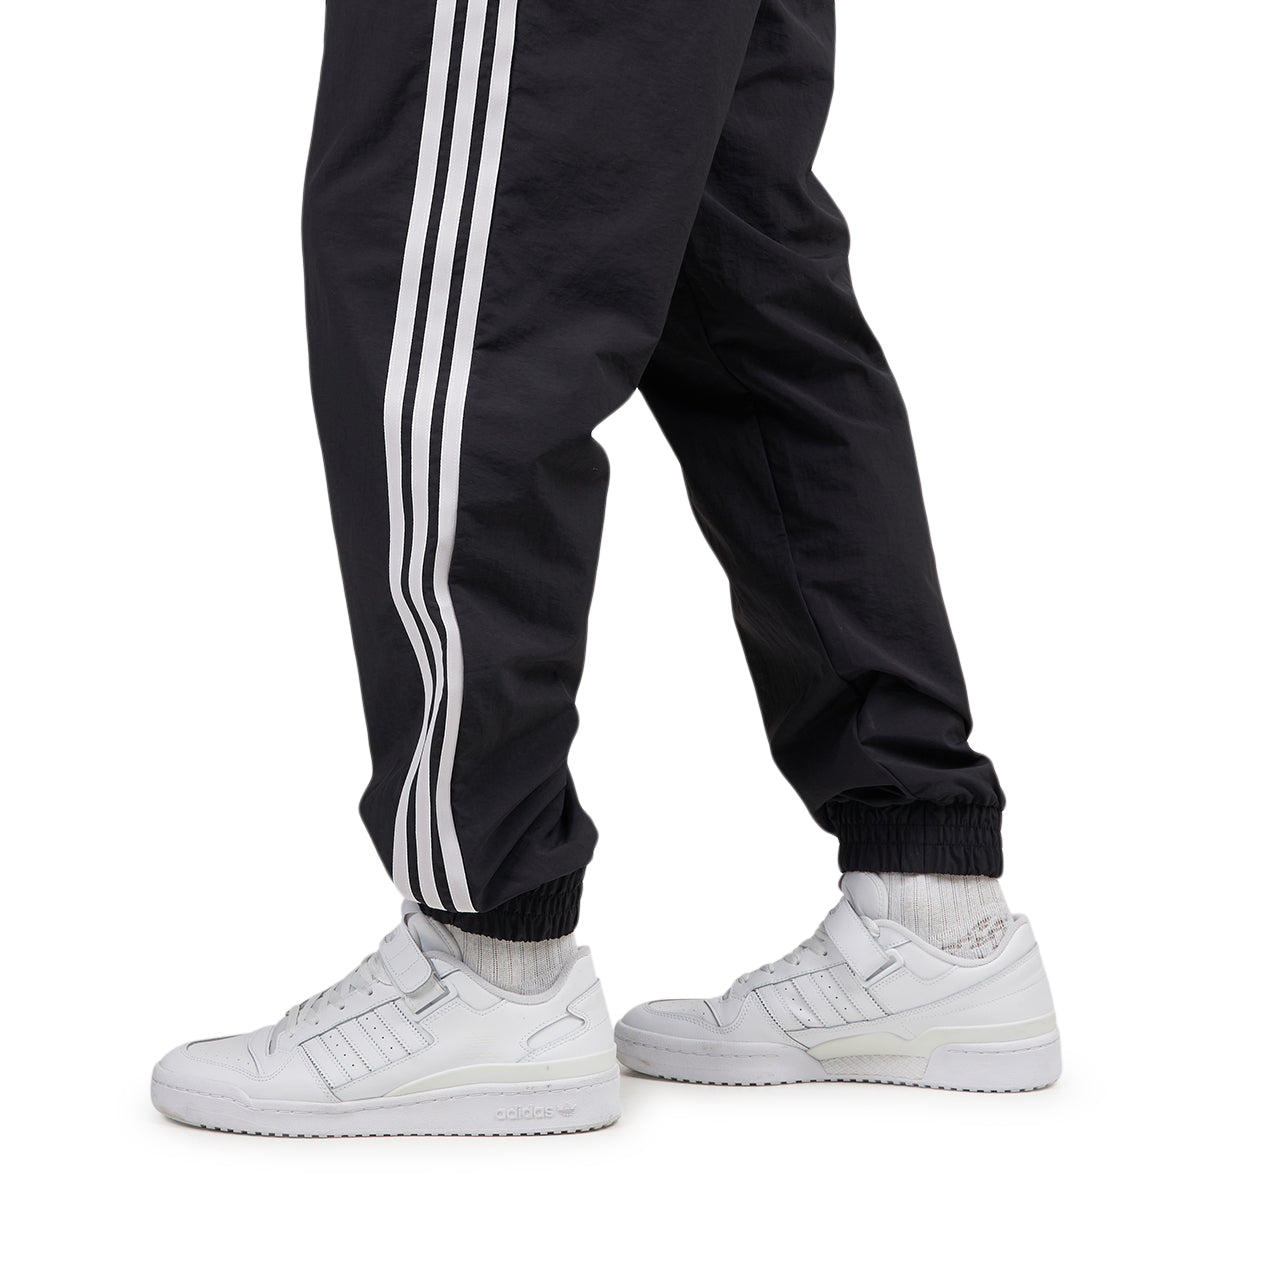 adidas Originals joggers NSRC Track Pants black color IL4982